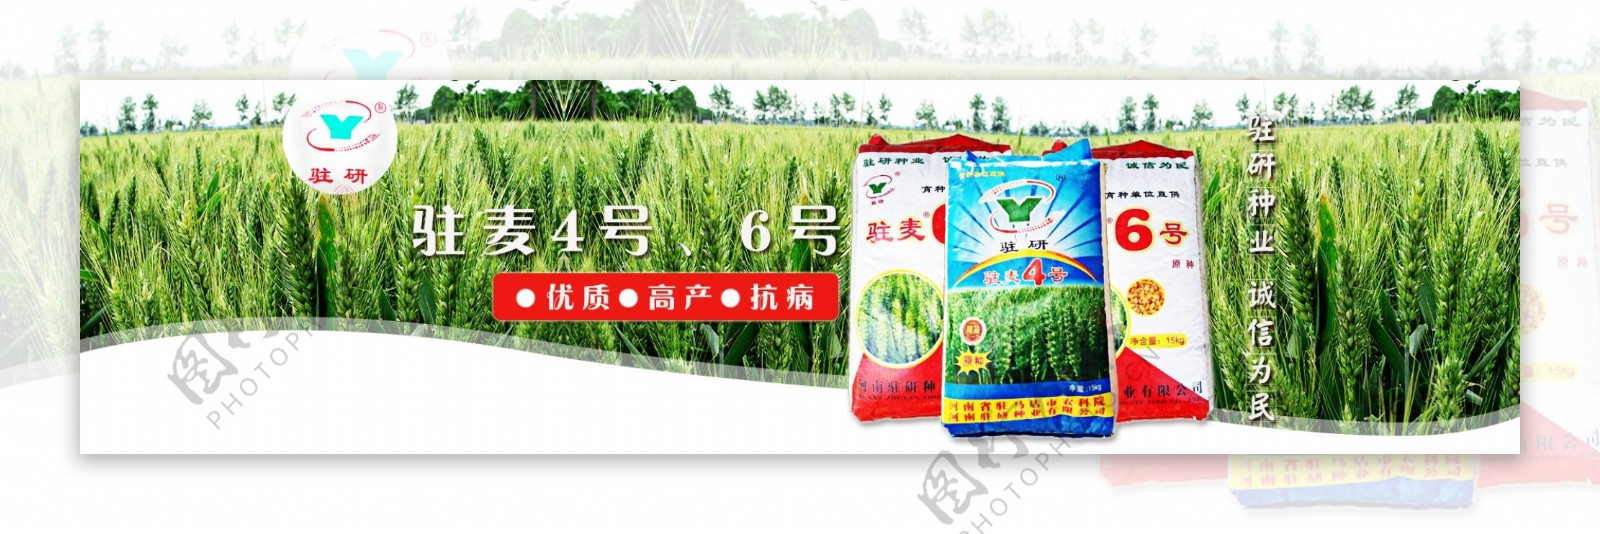 绿色农作物小麦种子海报